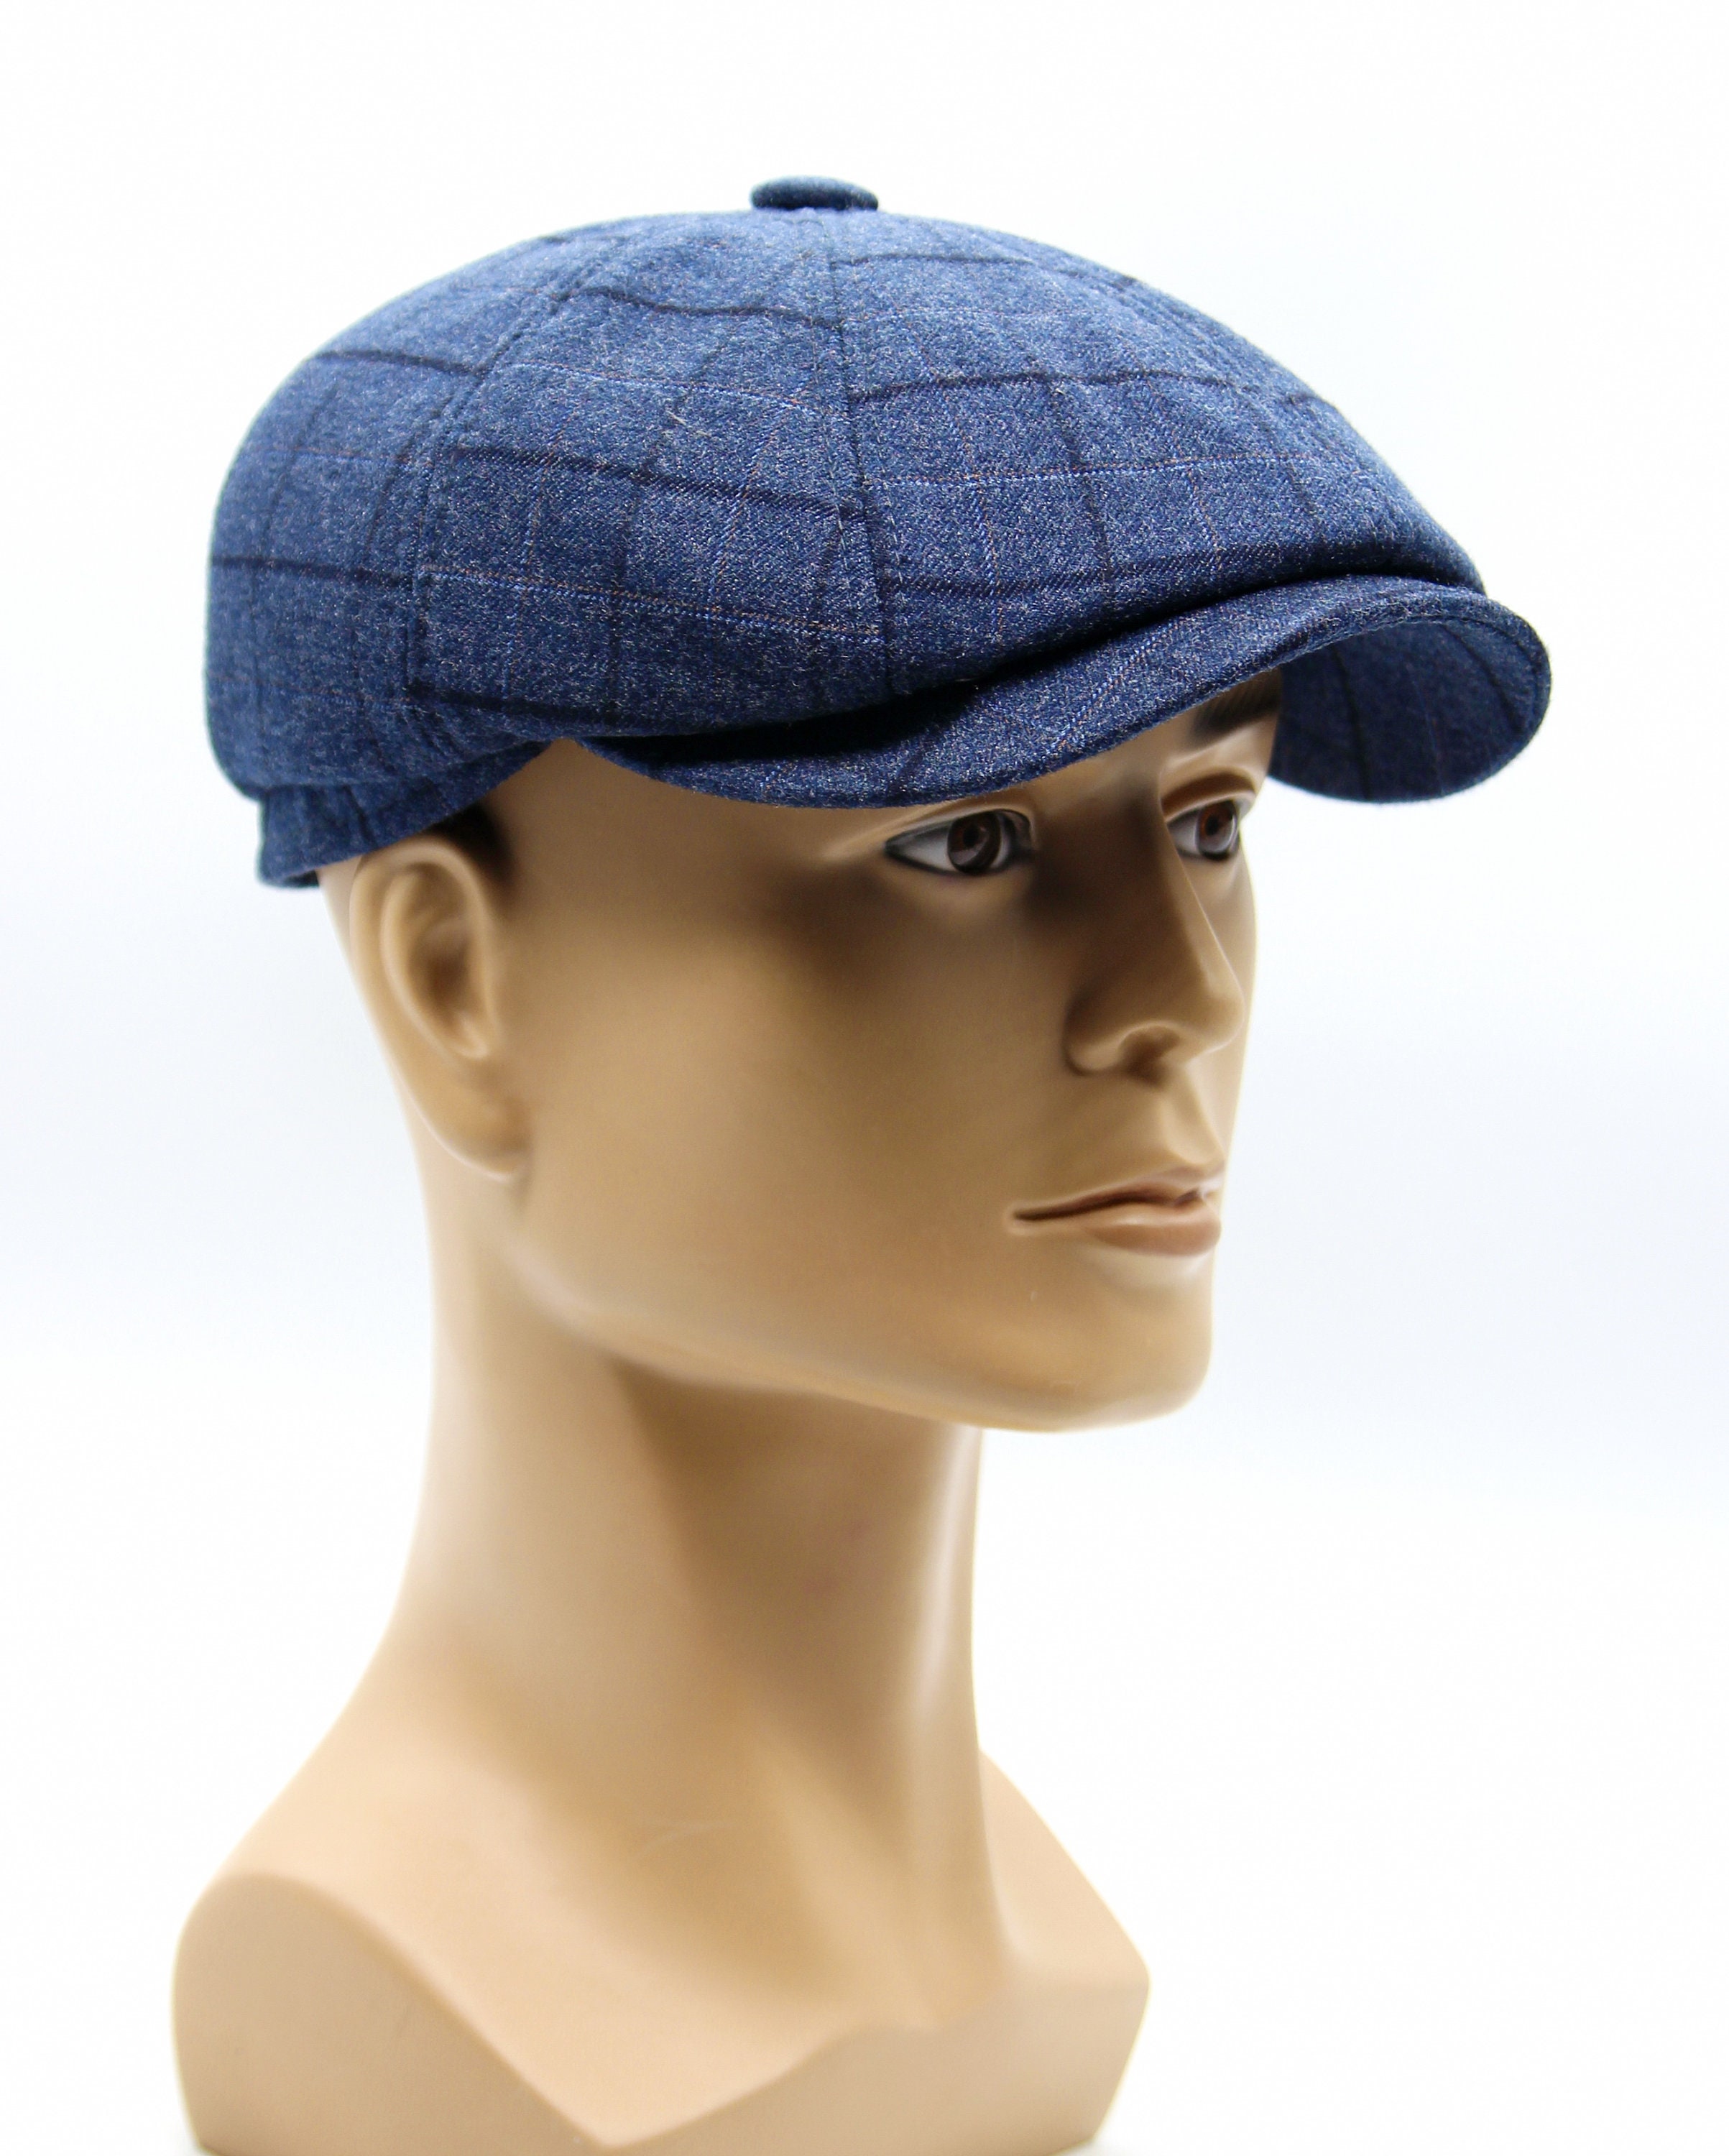 Mens baker boy cap newsboy hat blue | Etsy